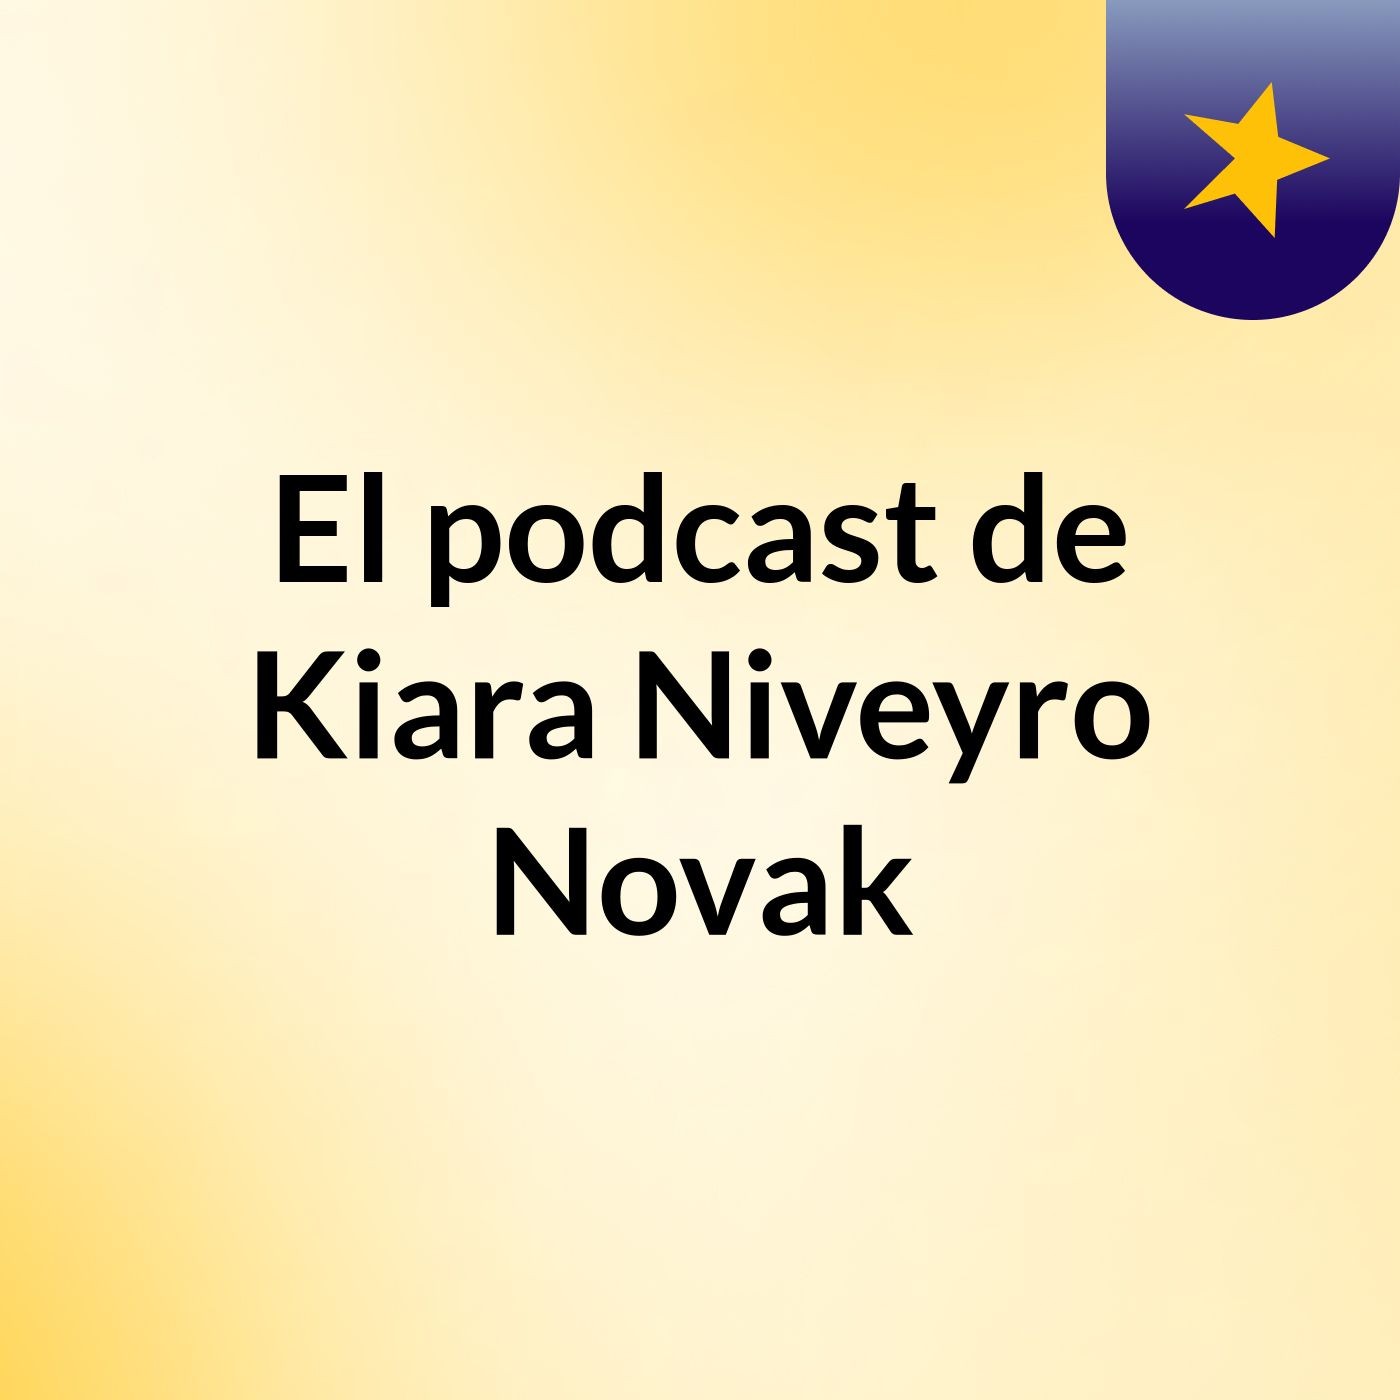 El podcast de Kiara Niveyro Novak